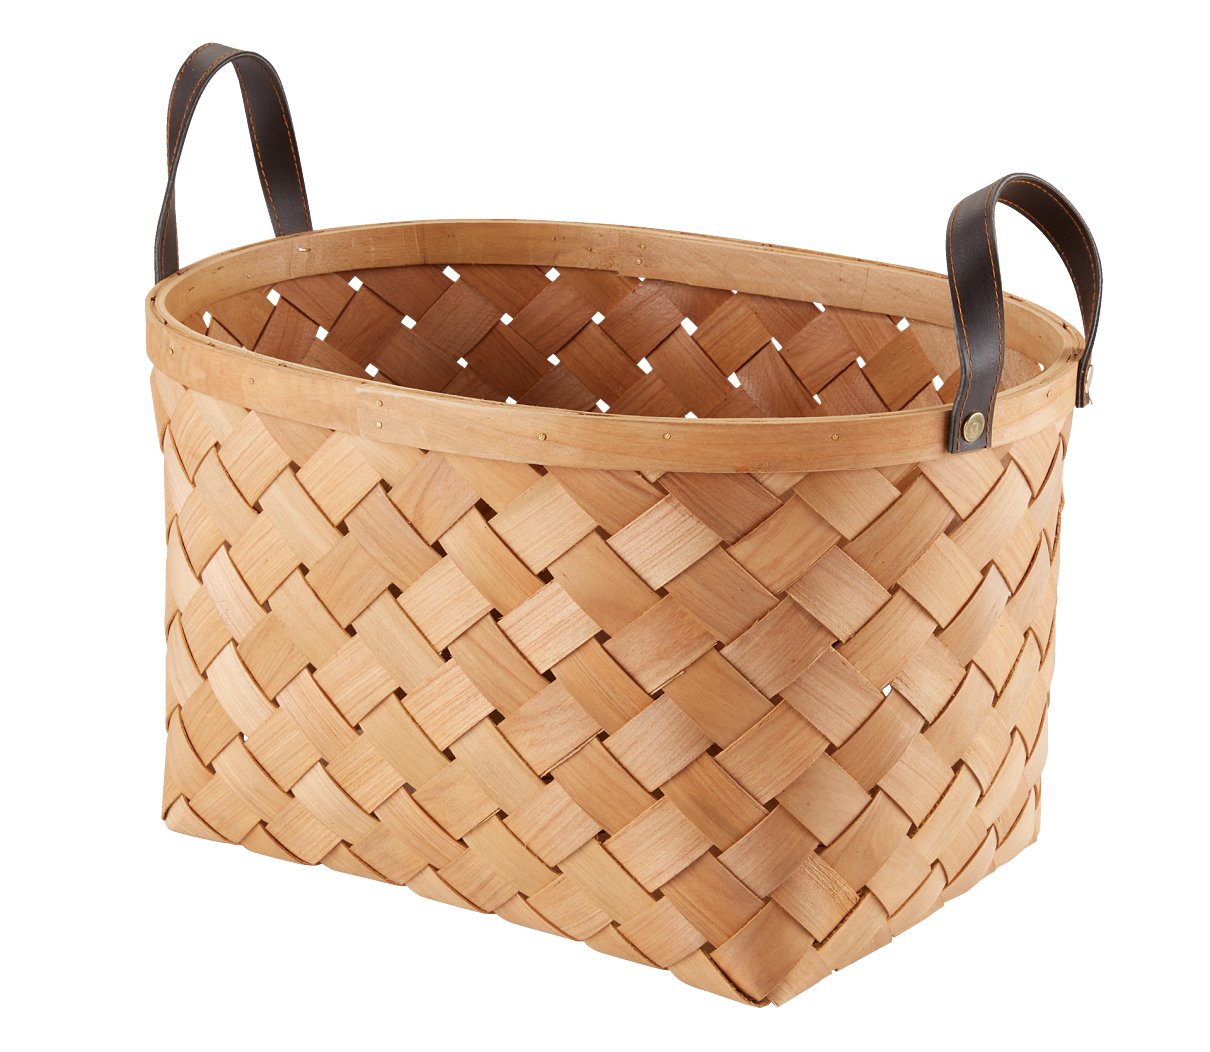 Basket RUBEN W26xL37xH27cm w. handles